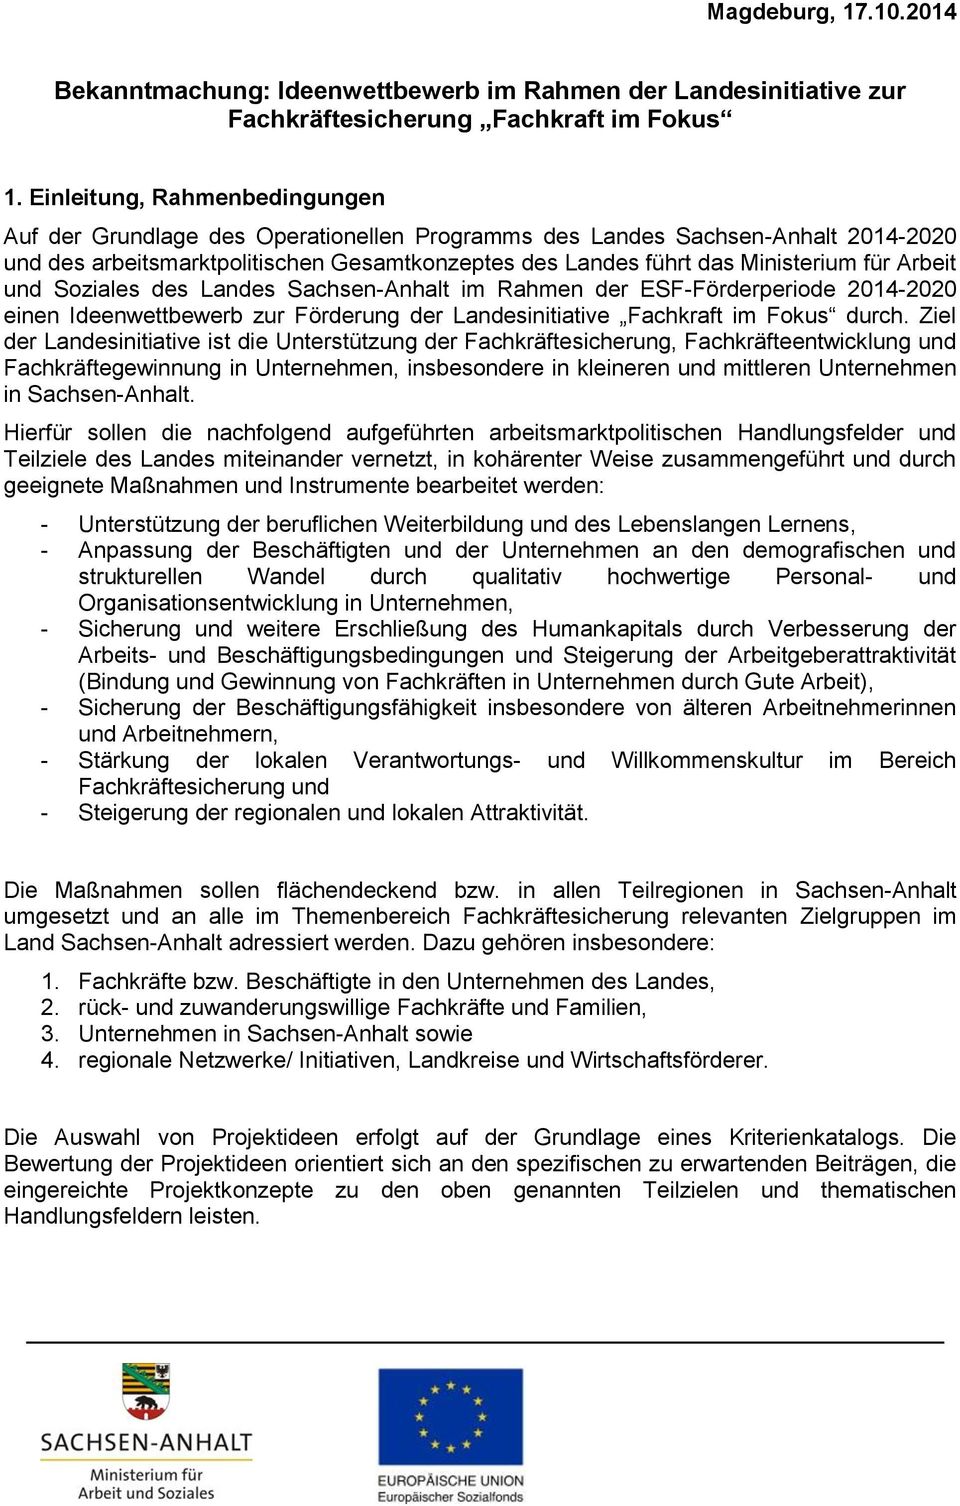 Arbeit und Soziales des Landes Sachsen-Anhalt im Rahmen der ESF-Förderperiode 2014-2020 einen Ideenwettbewerb zur Förderung der Landesinitiative Fachkraft im Fokus durch.